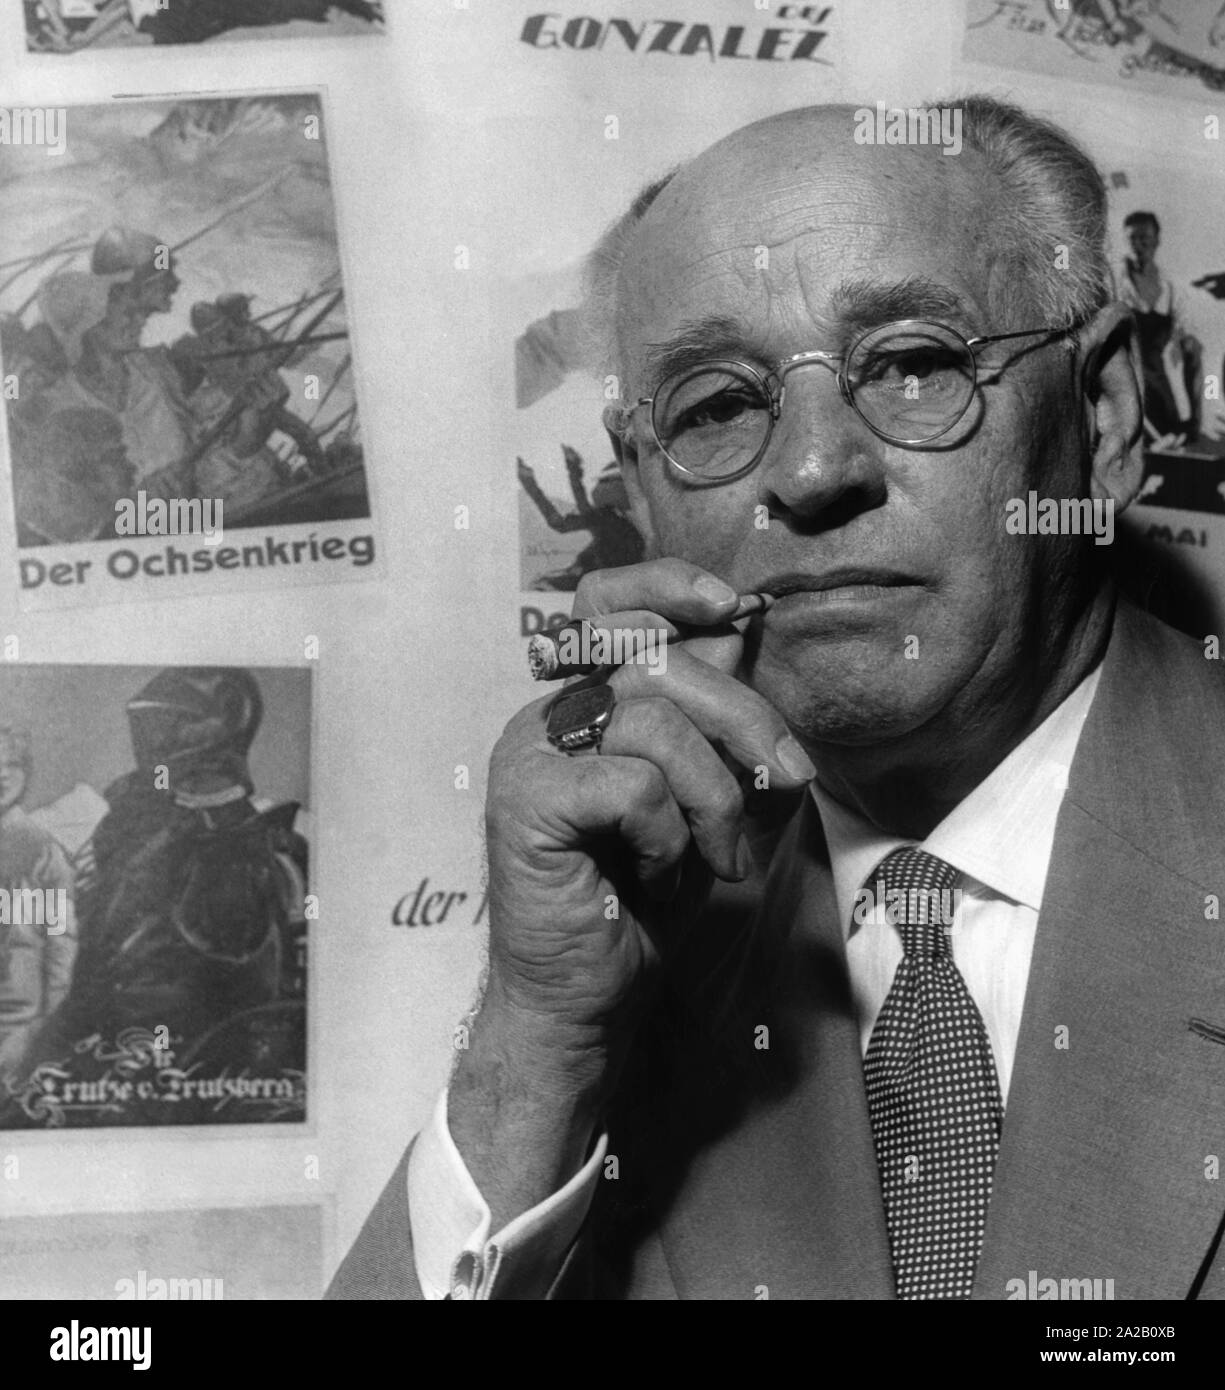 Portrait de l'pionniers du cinéma et producteur Peter Ostermayr, dans l'arrière-plan quelques affiches de ses films actuels. Ostermayr a réalisé plus de 500 films tout au long de sa vie et a été l'un des plus importants producteurs du film allemand de la première moitié du 20e siècle. Banque D'Images